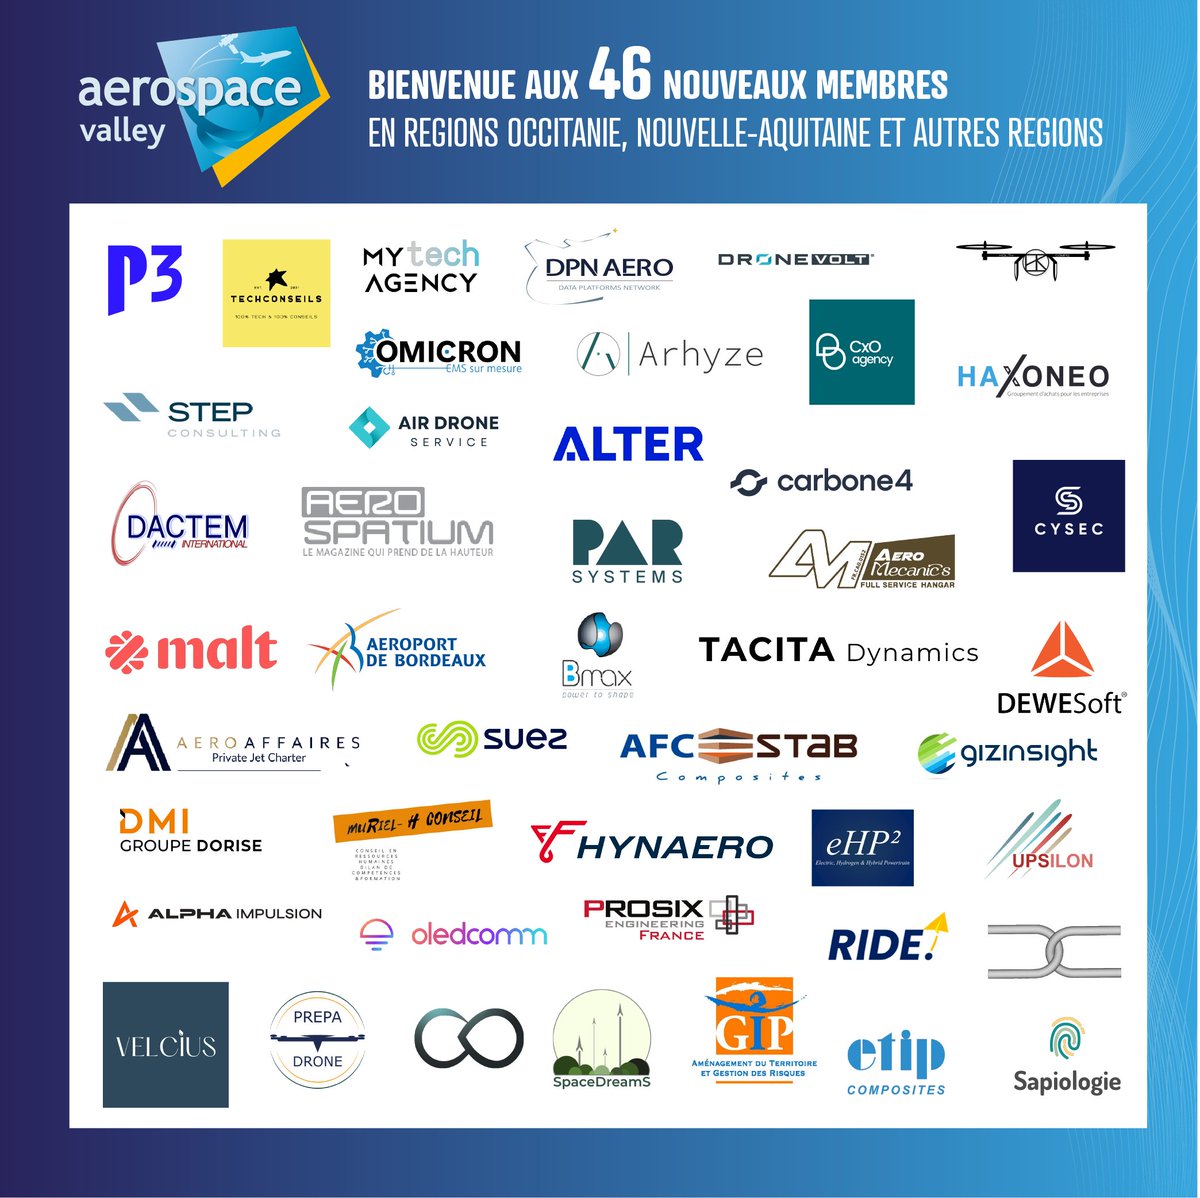 [ #WELCOME ] Comment mieux terminer cette année 2023 qu'en vous présentant les nouveaux membres ! @AerospaceValley est ravi d'accueillir 46 nouveaux membres en Occitanie, Nouvelle-Aquitaine et autres régions. Les découvrir ➡ bityl.co/N5gP #Team #Aerospace #Innovation